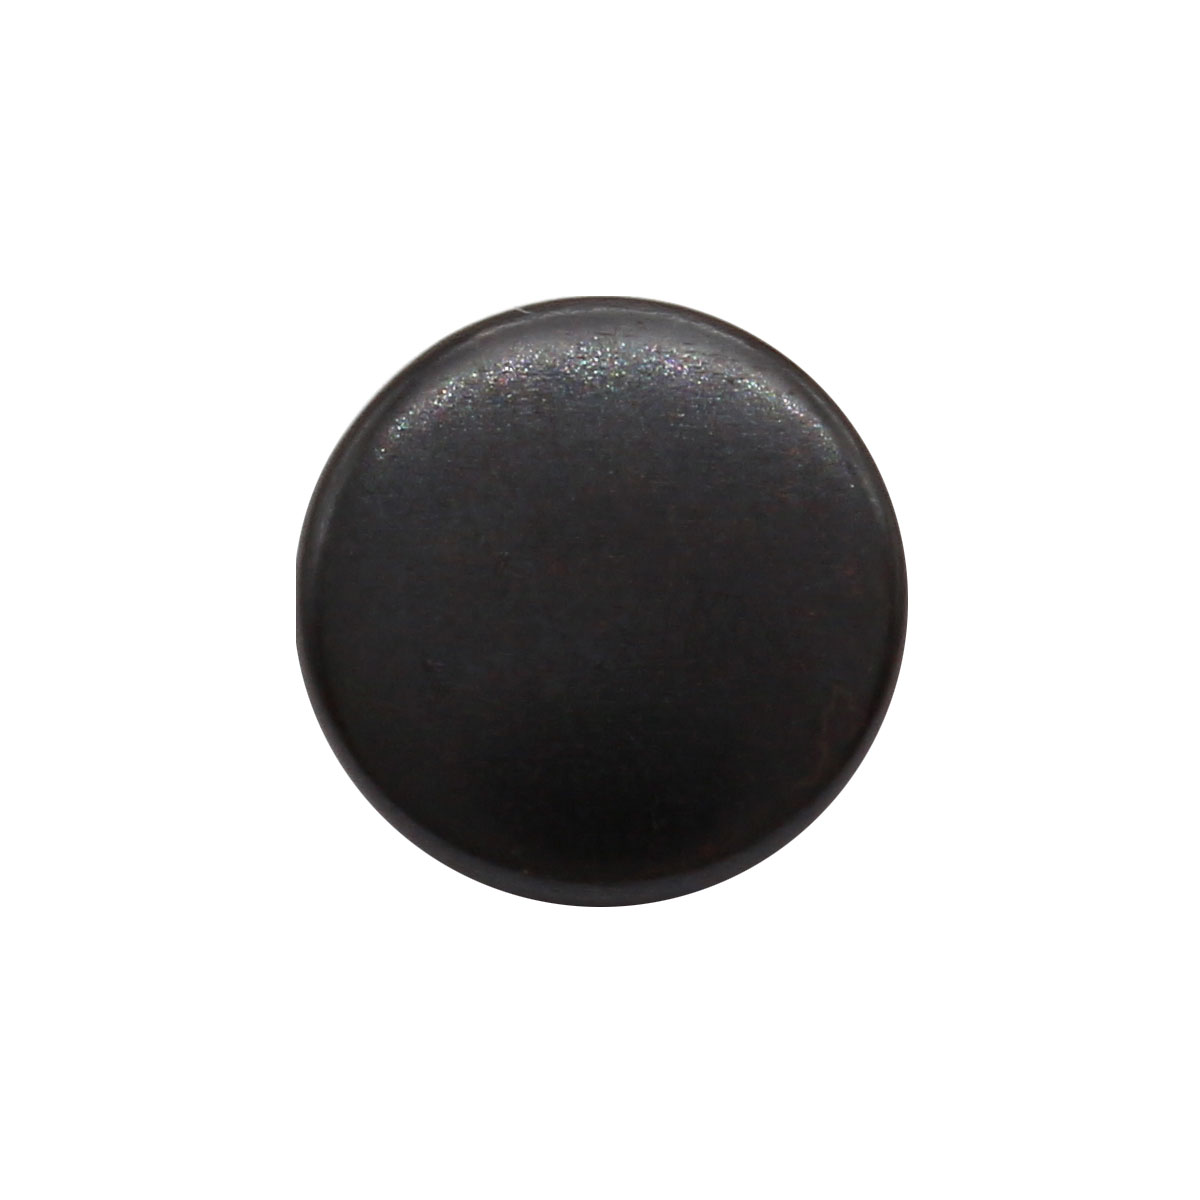 Кнопка NEW STAR, ВТ-2, 10 мм, сталь (цвет оксид), 144 шт